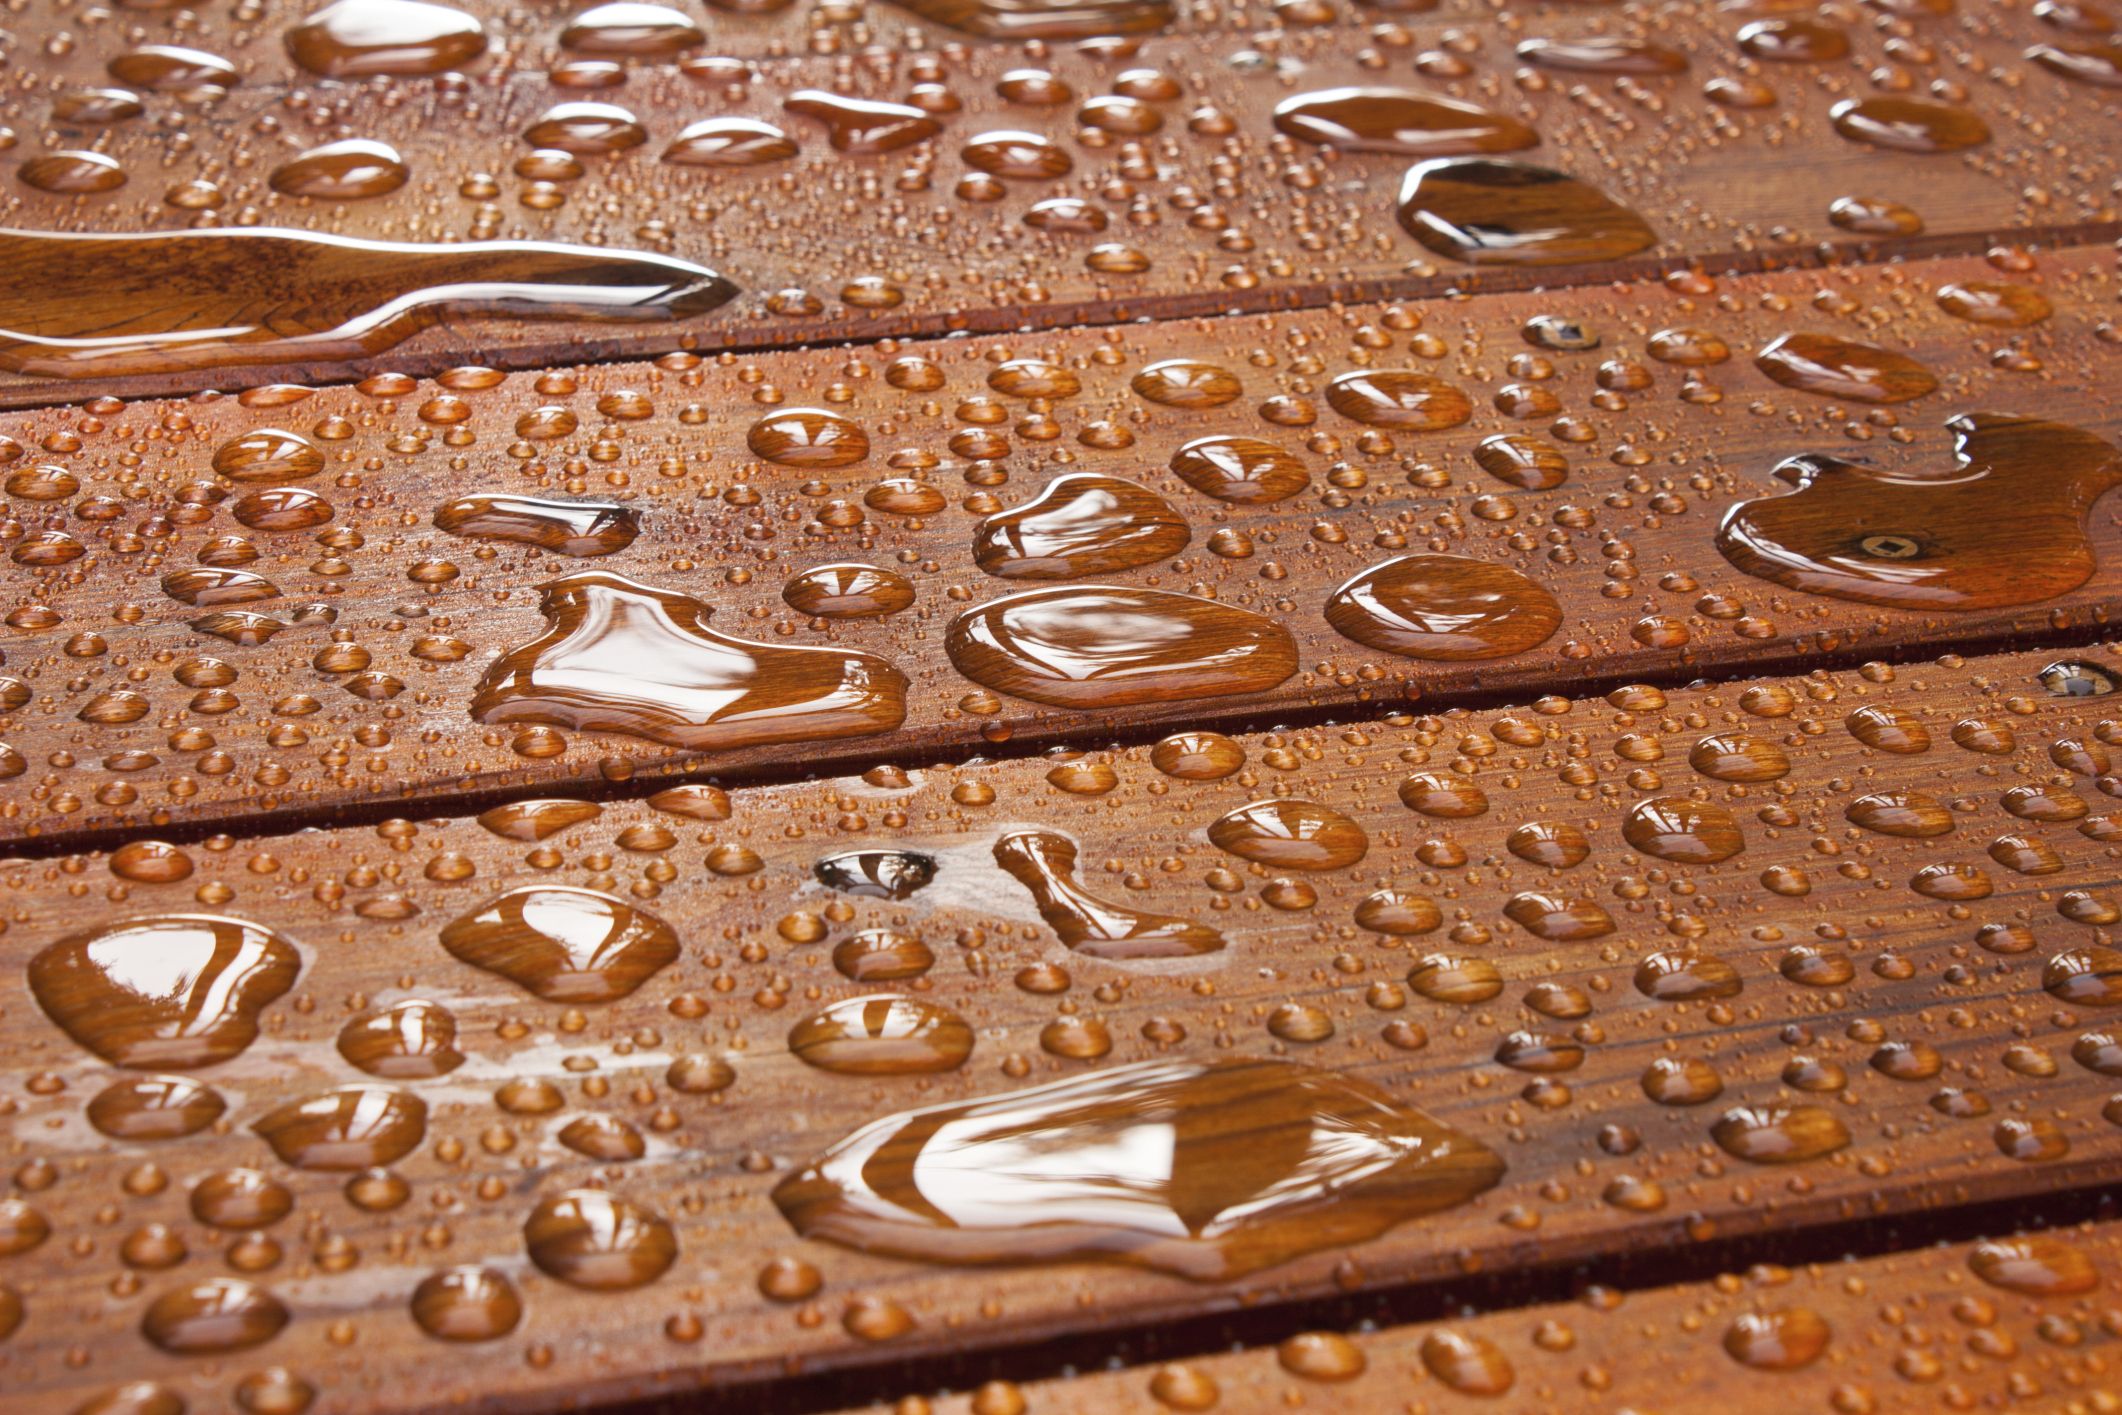 Is your wood deck # waterproof like this? Deep penetrating ...